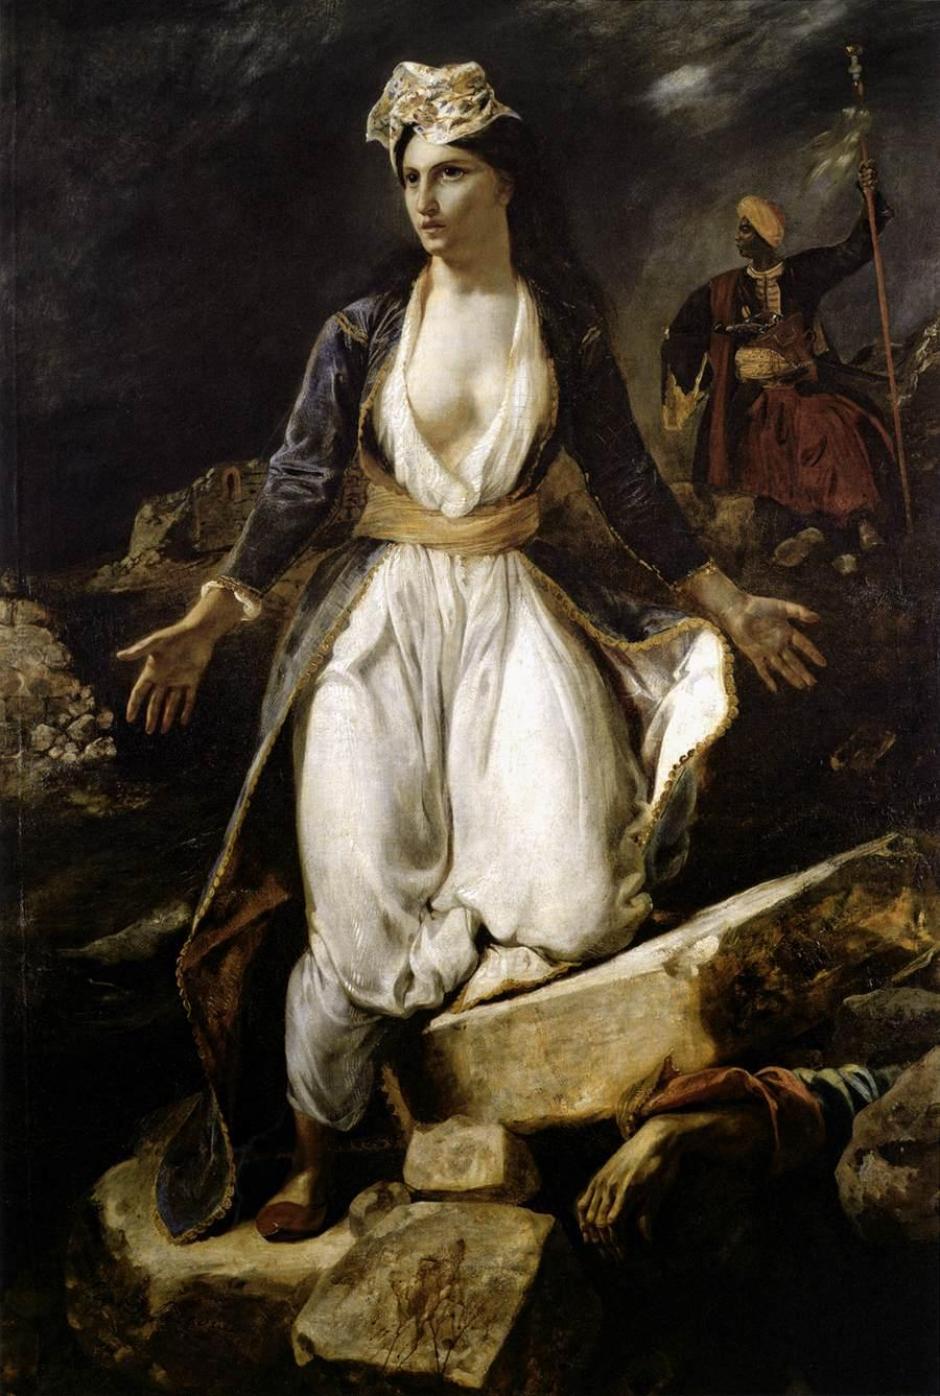 Grecia expirante entre las ruinas de Missolonghi, pintura de Eugène Delacroix